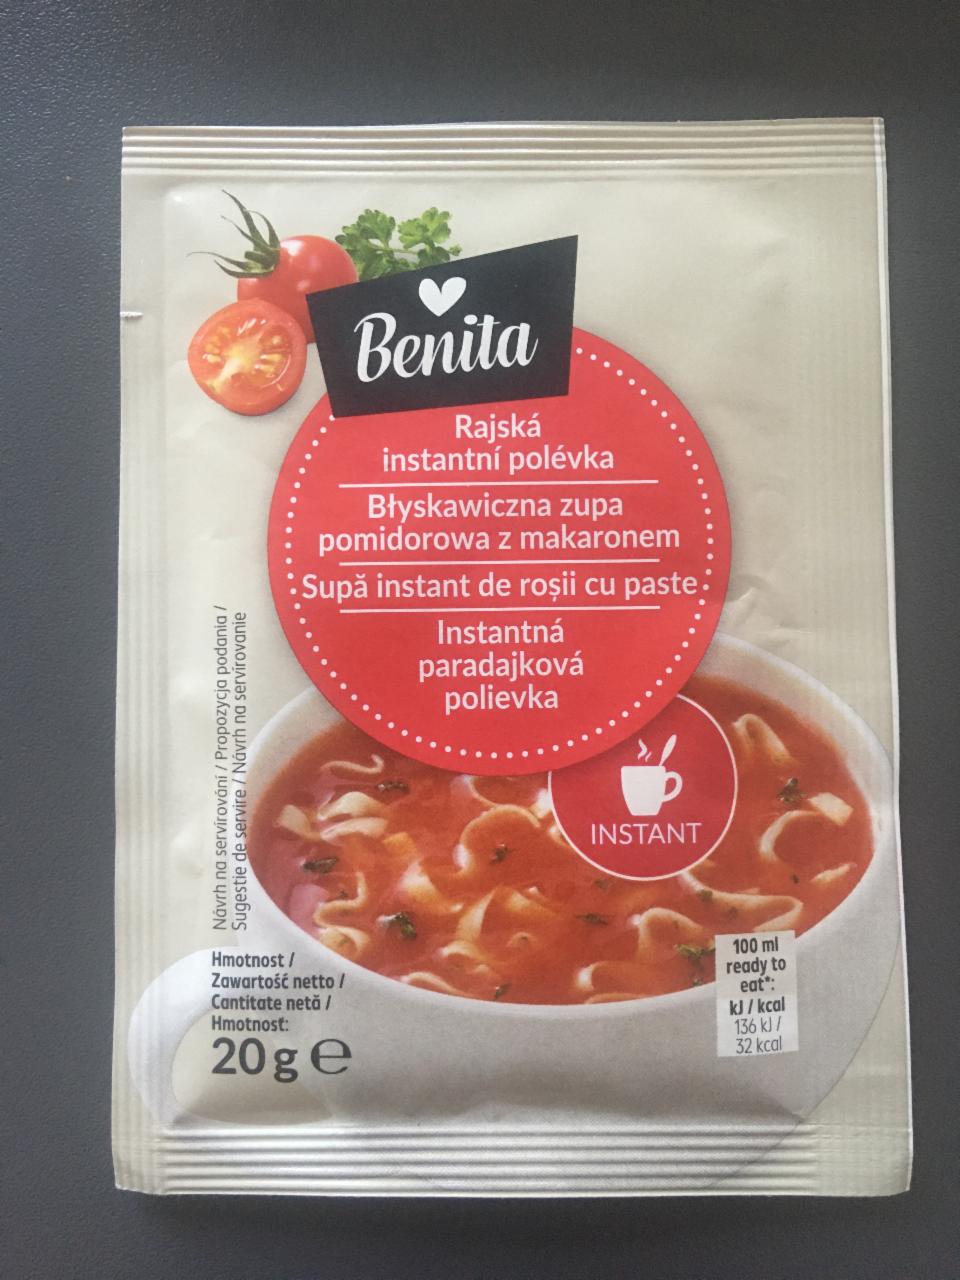 Fotografie - Instantná paradajková polievka Benita